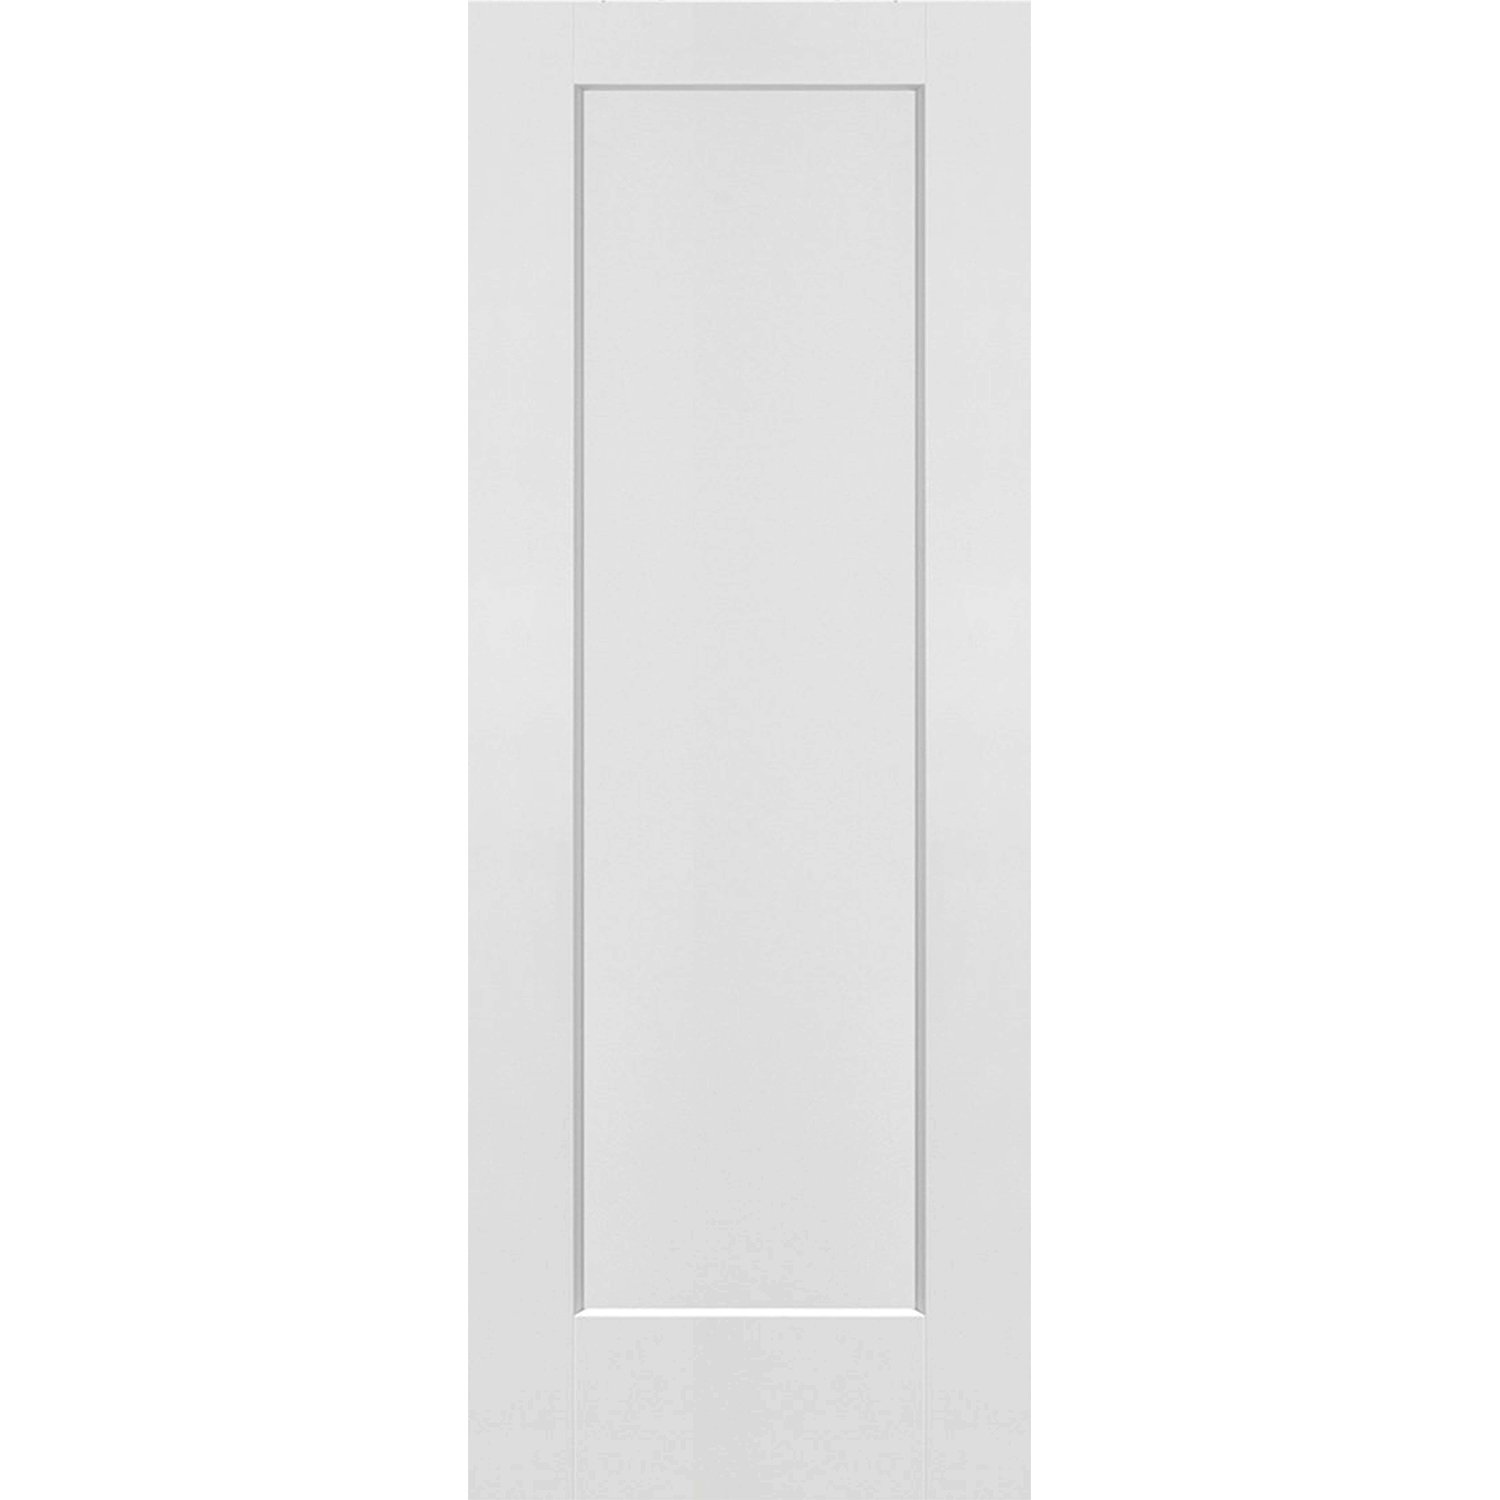 1 Panel Shaker Door (Solid Core) - 30 x 80